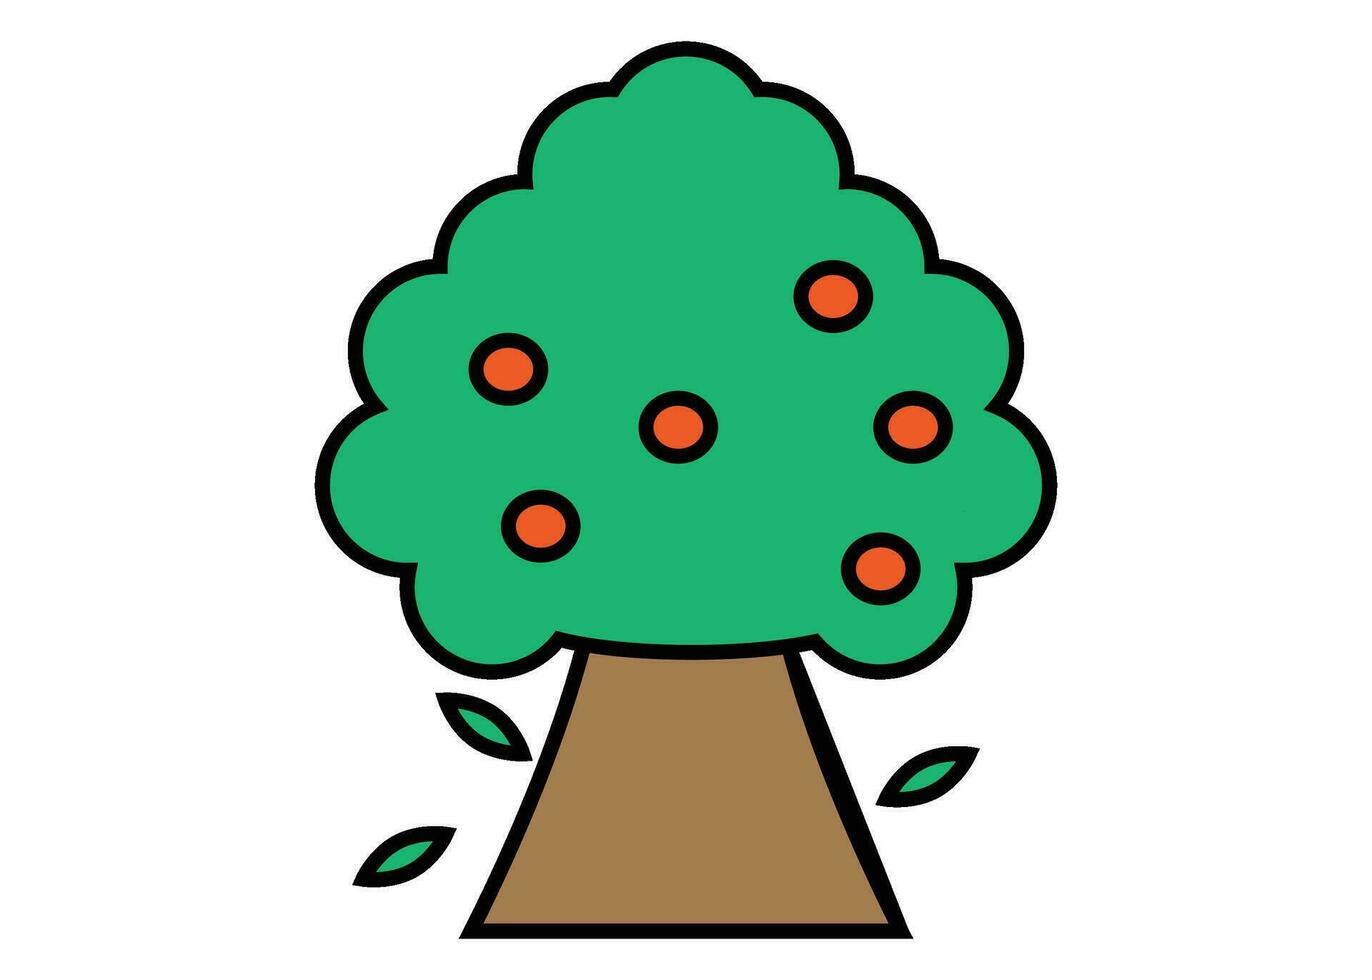 persika träd ikon ClipArt design illustration isolerat vektor